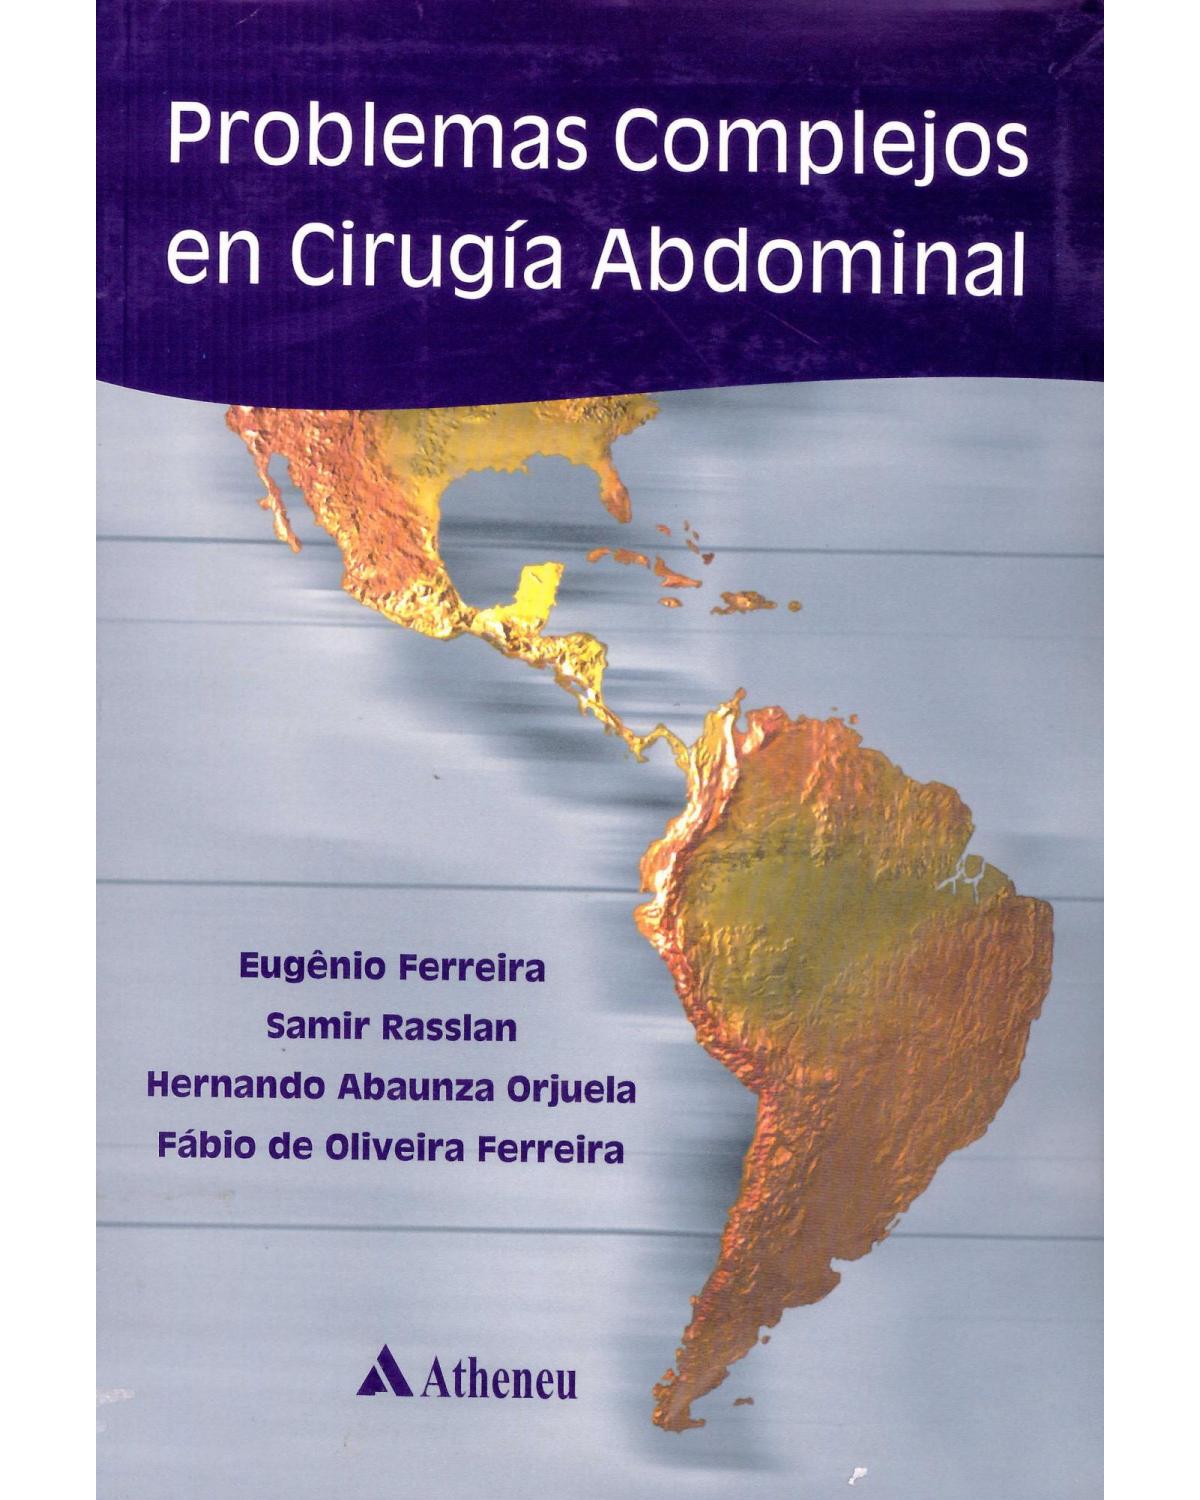 Problemas complejos en cirurgía abdominal - 1ª Edição | 2003